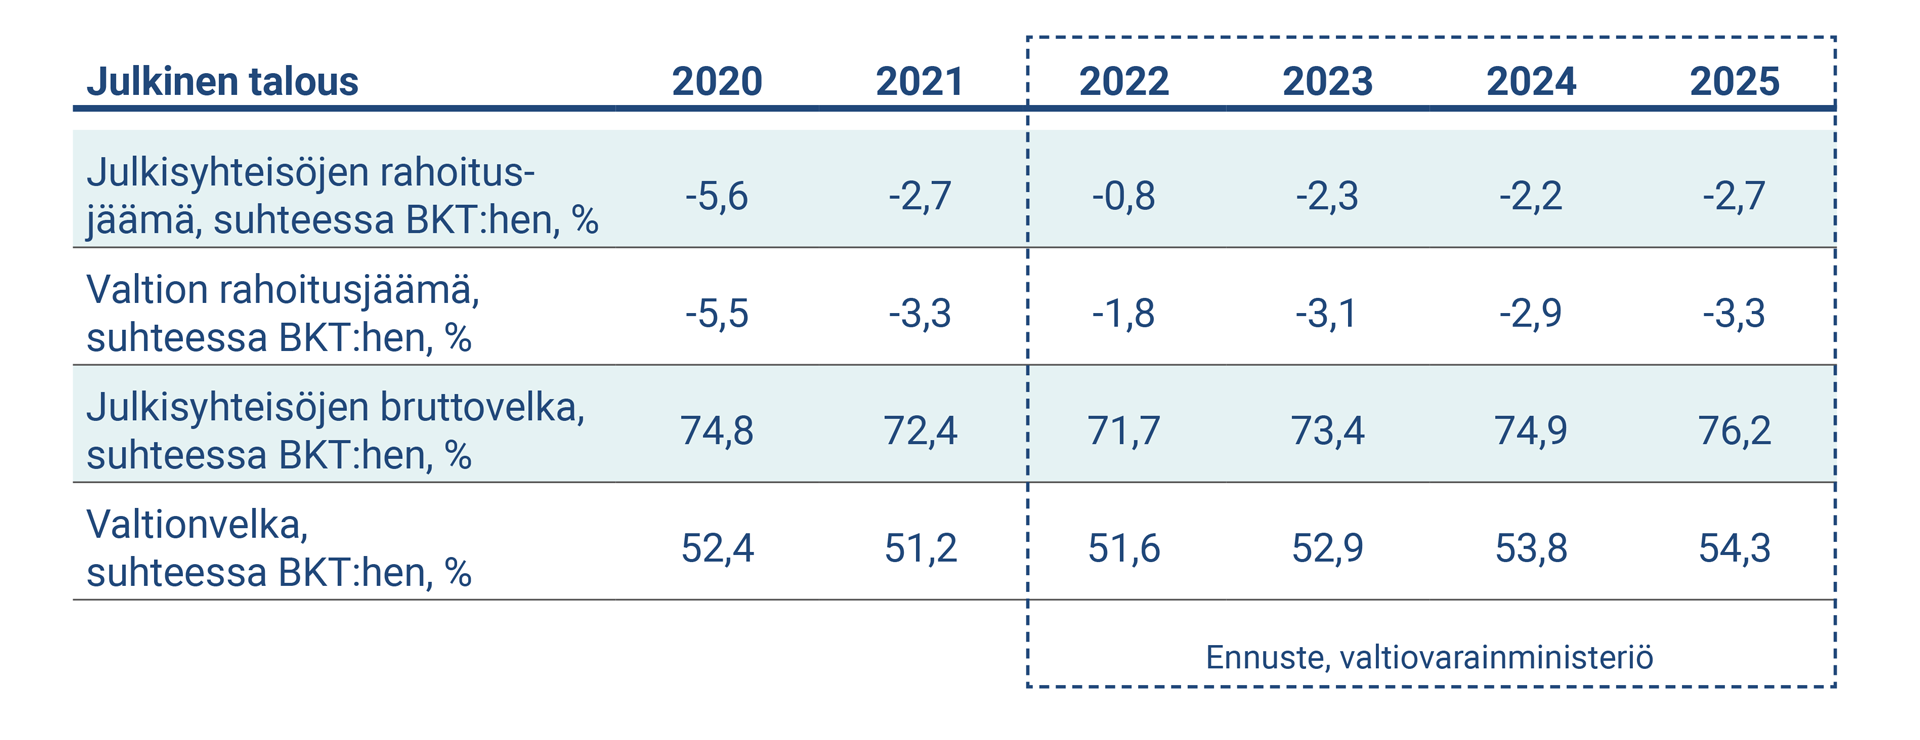 Taulukko kuvaa julkisen talouden keskeiset tunnusluvut vuosina 2020-2025.